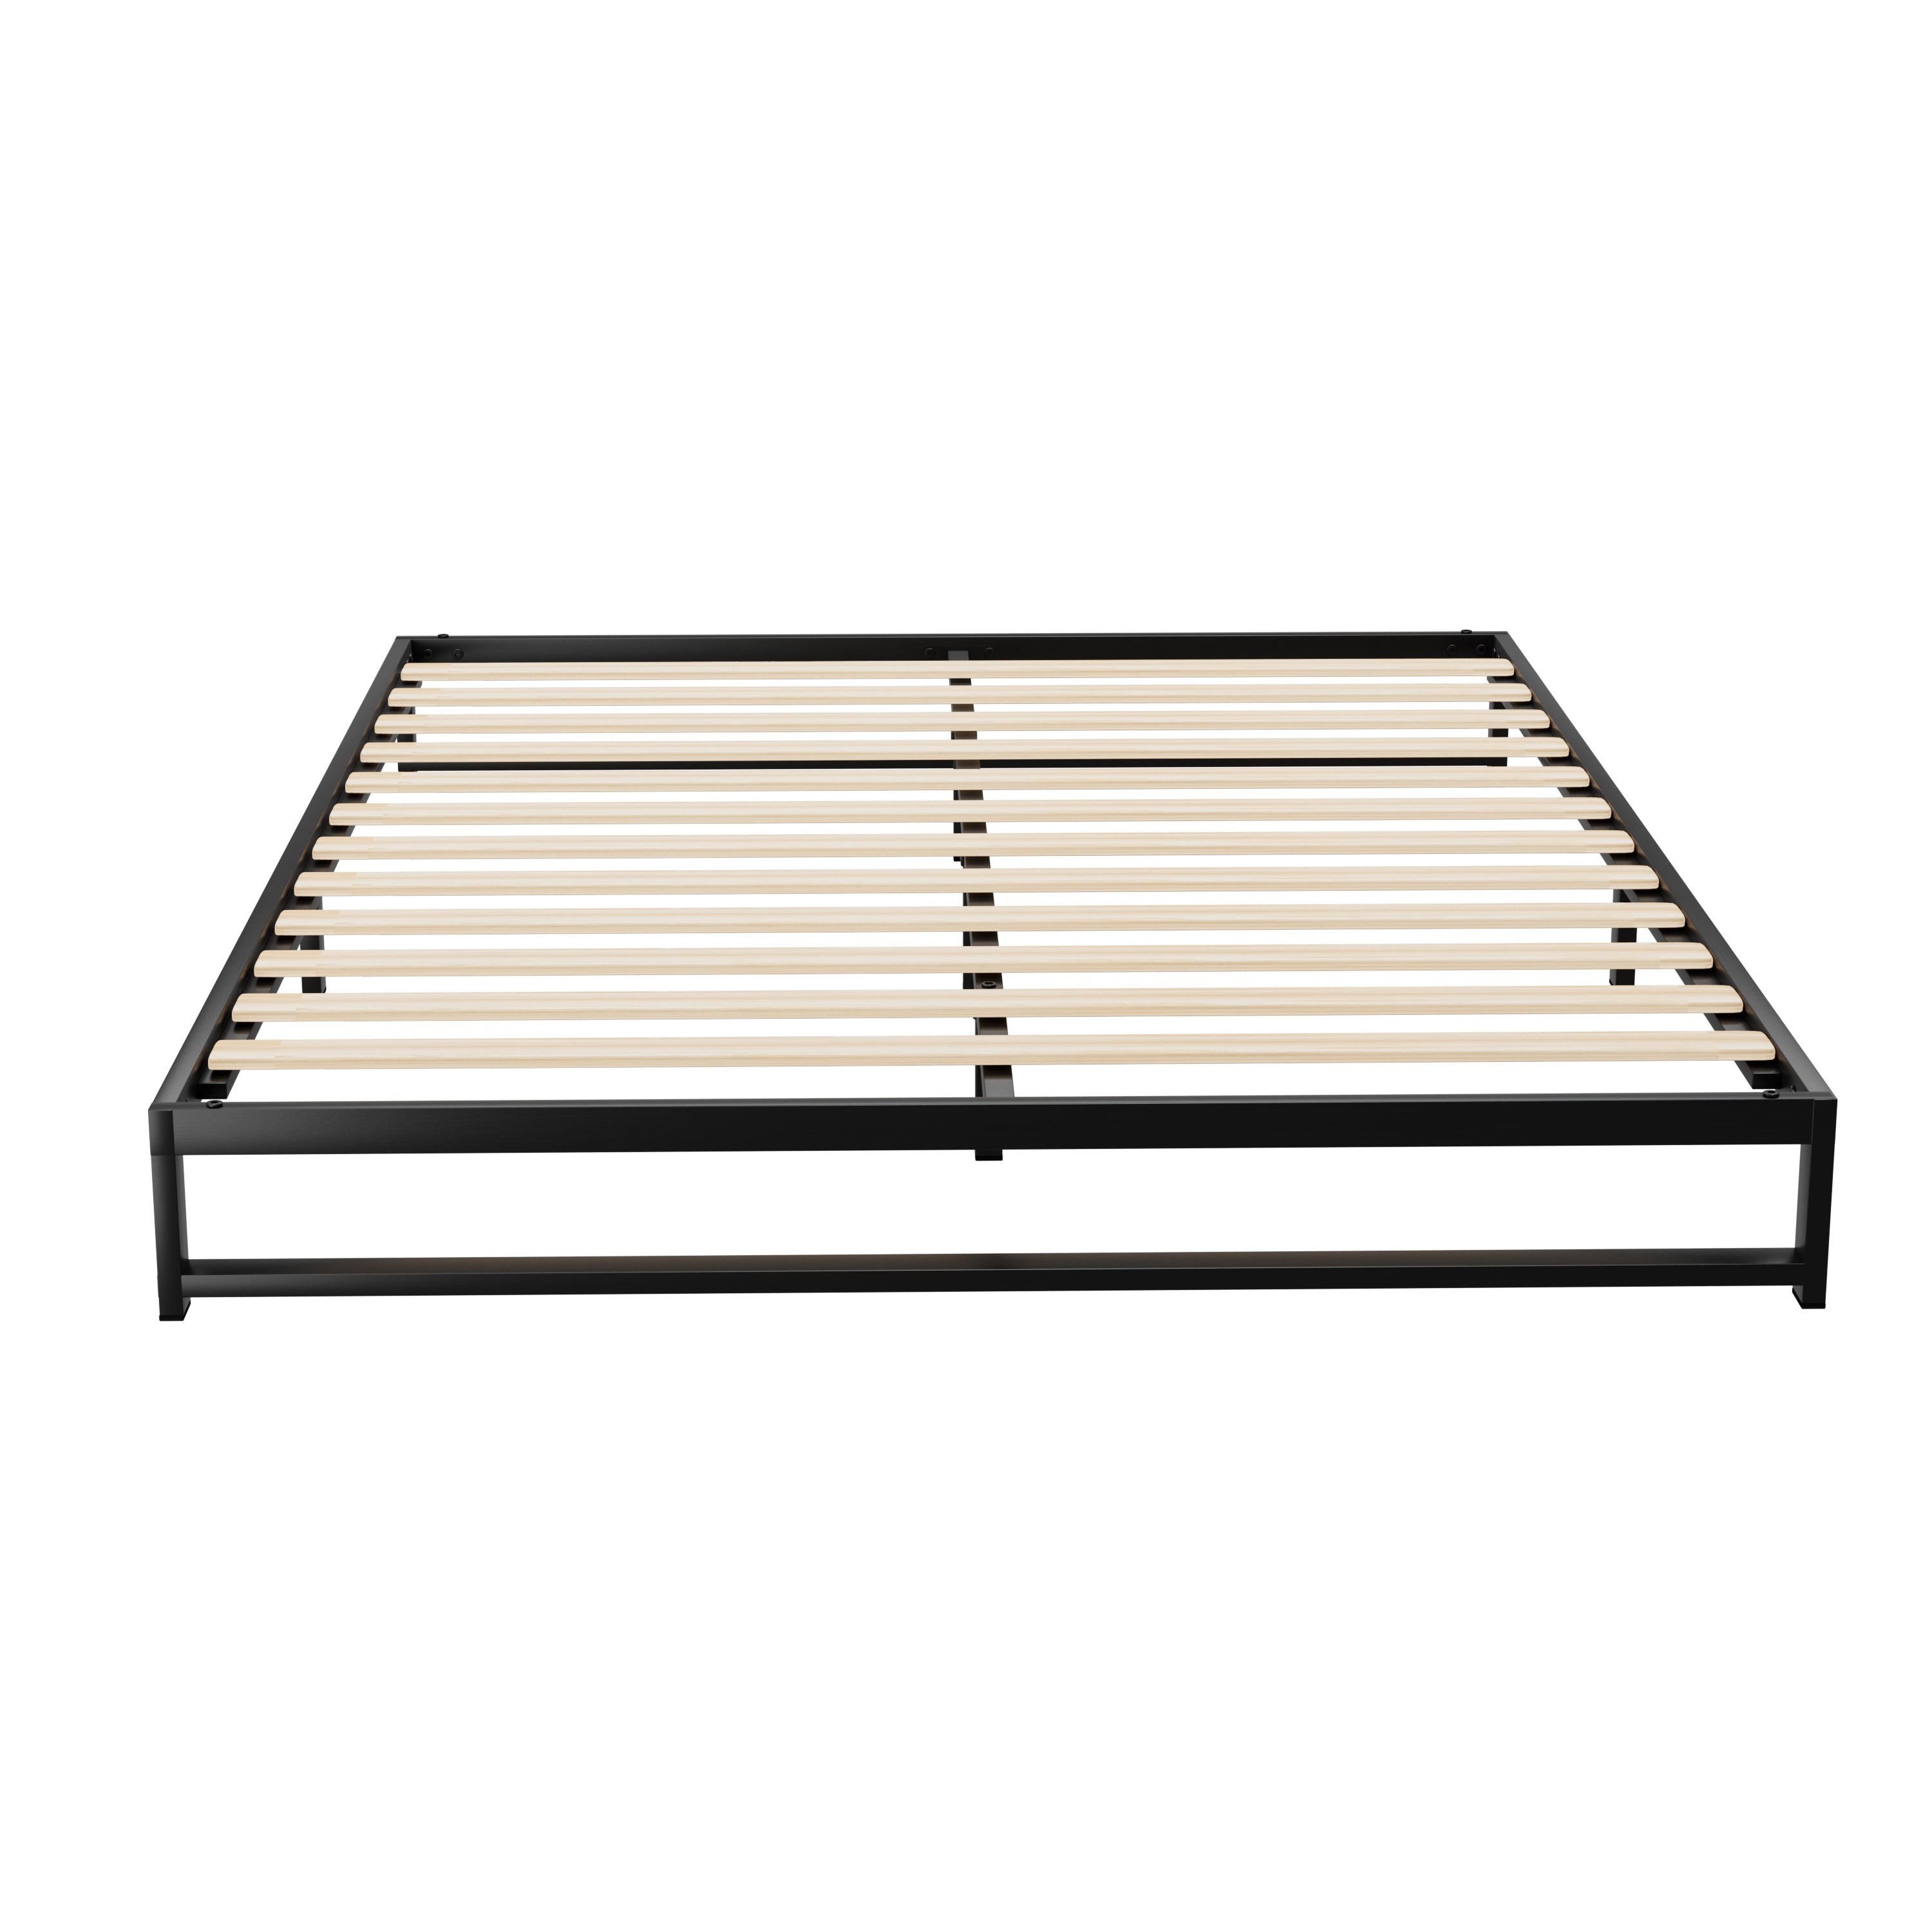 Artiss Metal Bed Frame Double Size Bed Base Mattress Platform Black BERU-Furniture &gt; Bedroom - Peroz Australia - Image - 3